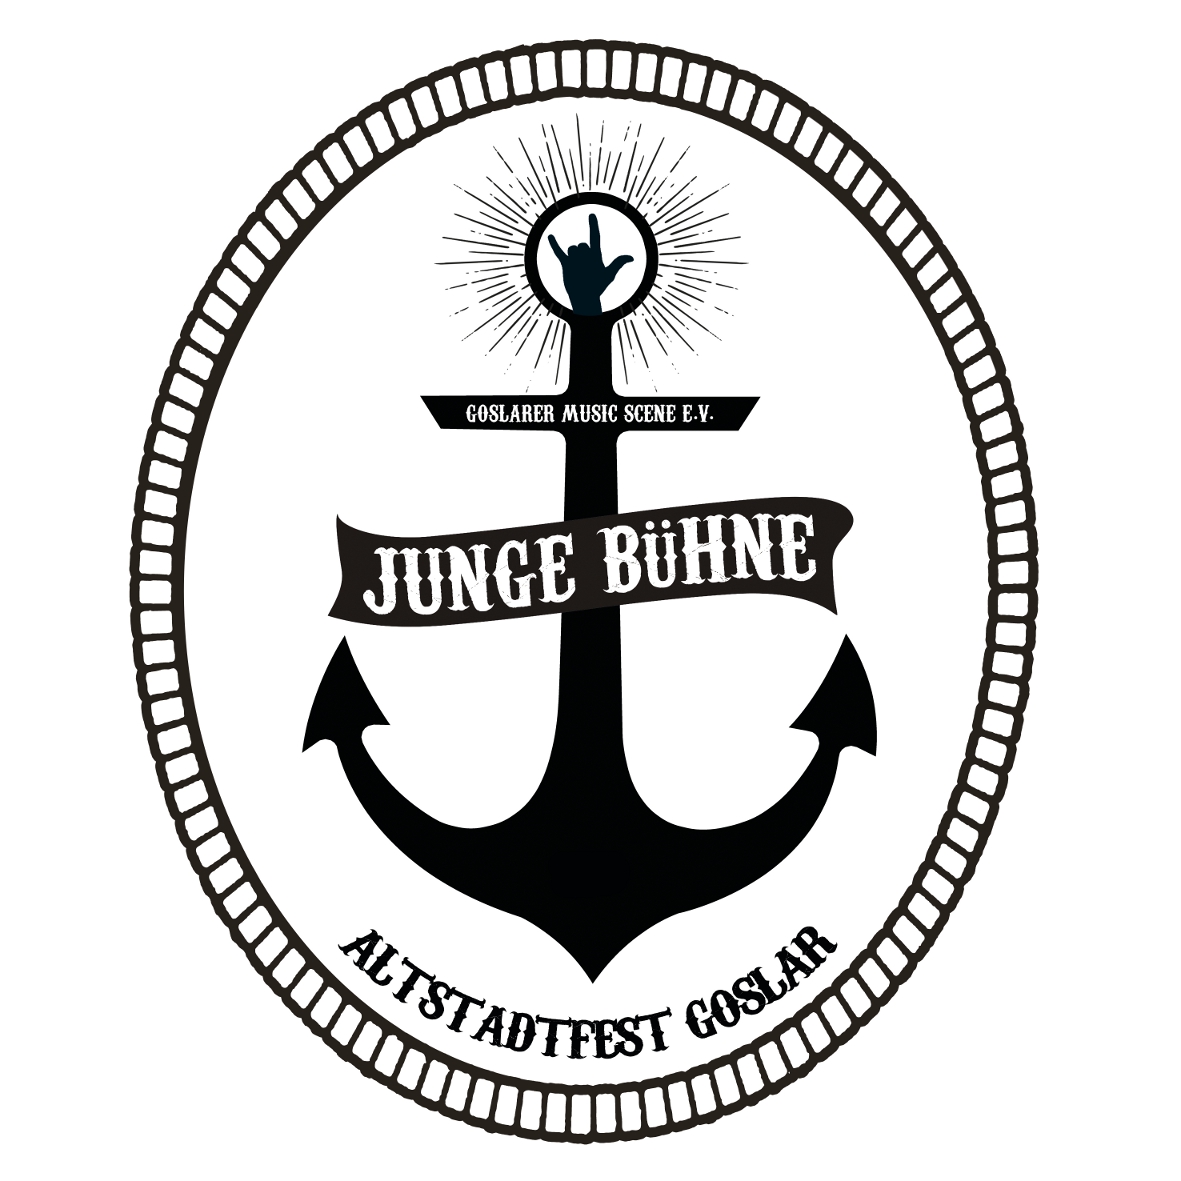 JUNGE BUEHNE logo klein